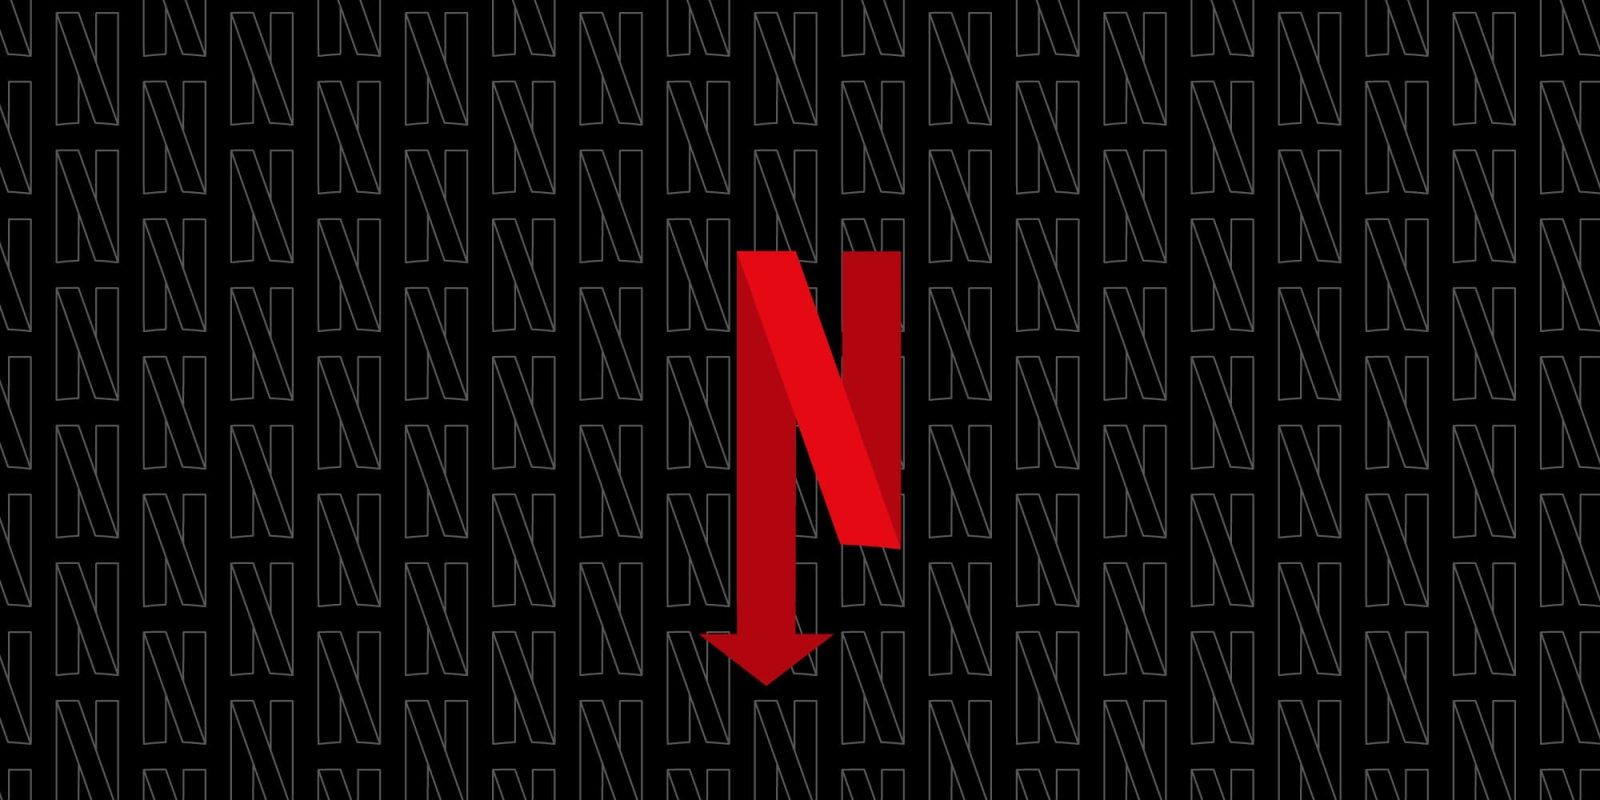 Netflix subscription plans down